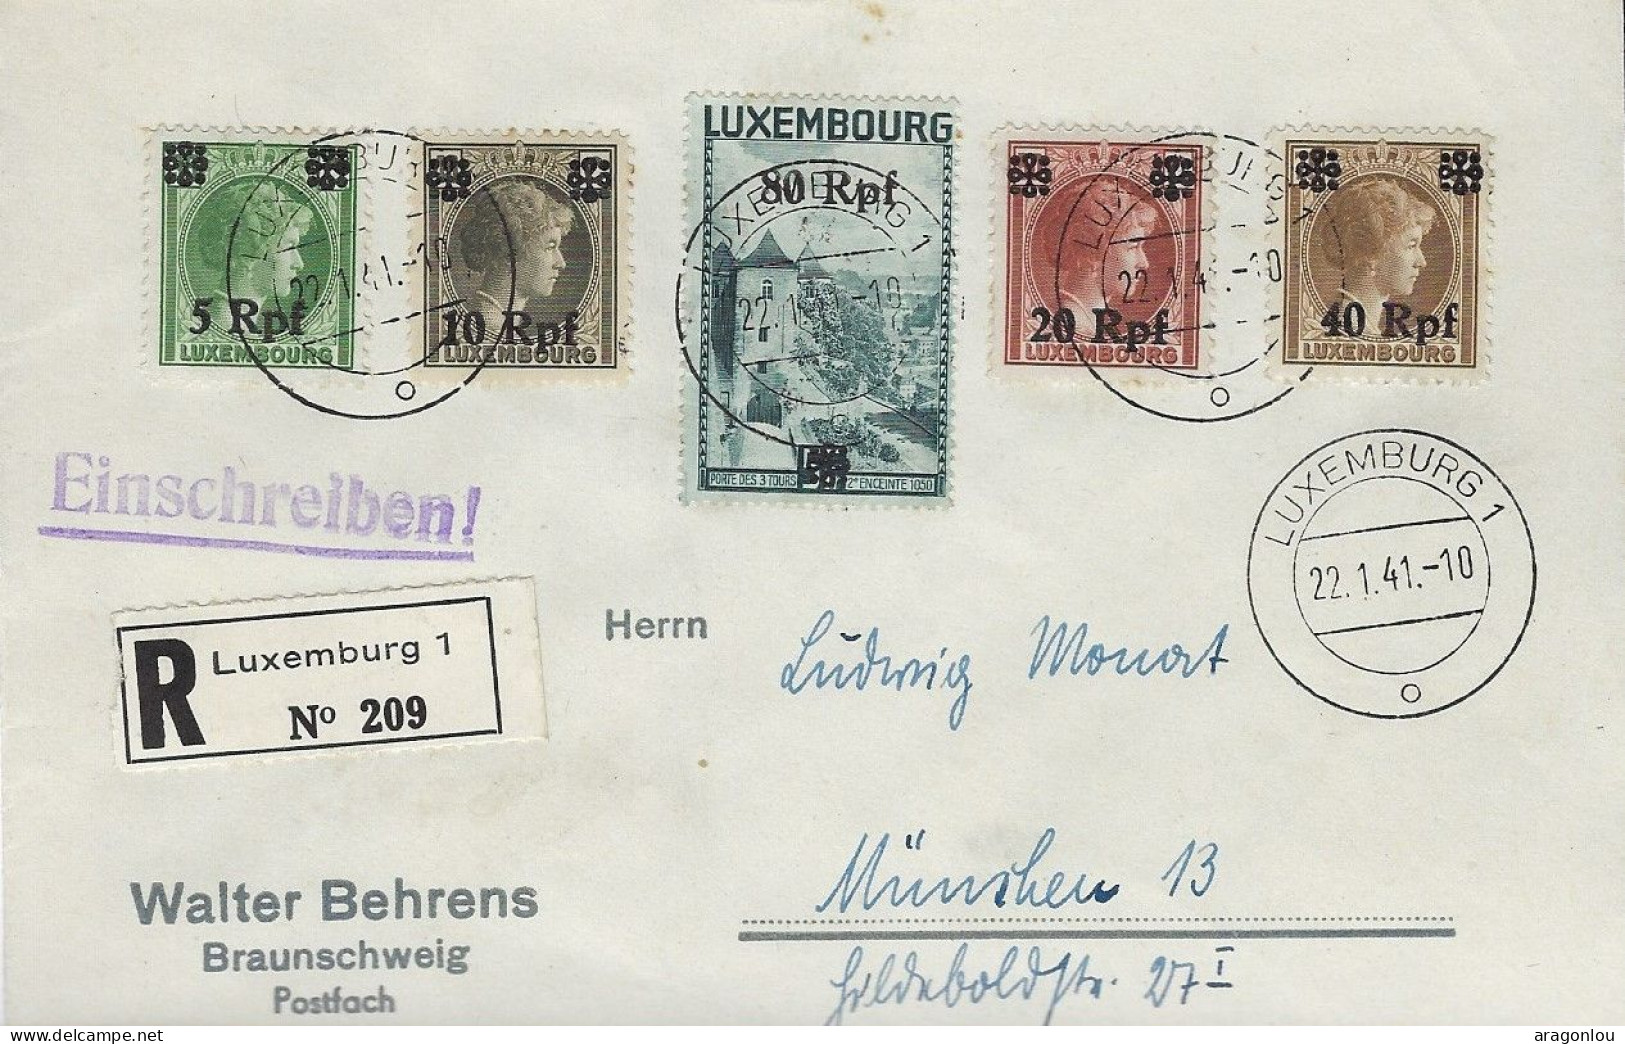 Luxembourg - Luxemburg - Lettre Recommandé  1941  Occupation 2ième Guerre Mondiale - 1940-1944 German Occupation